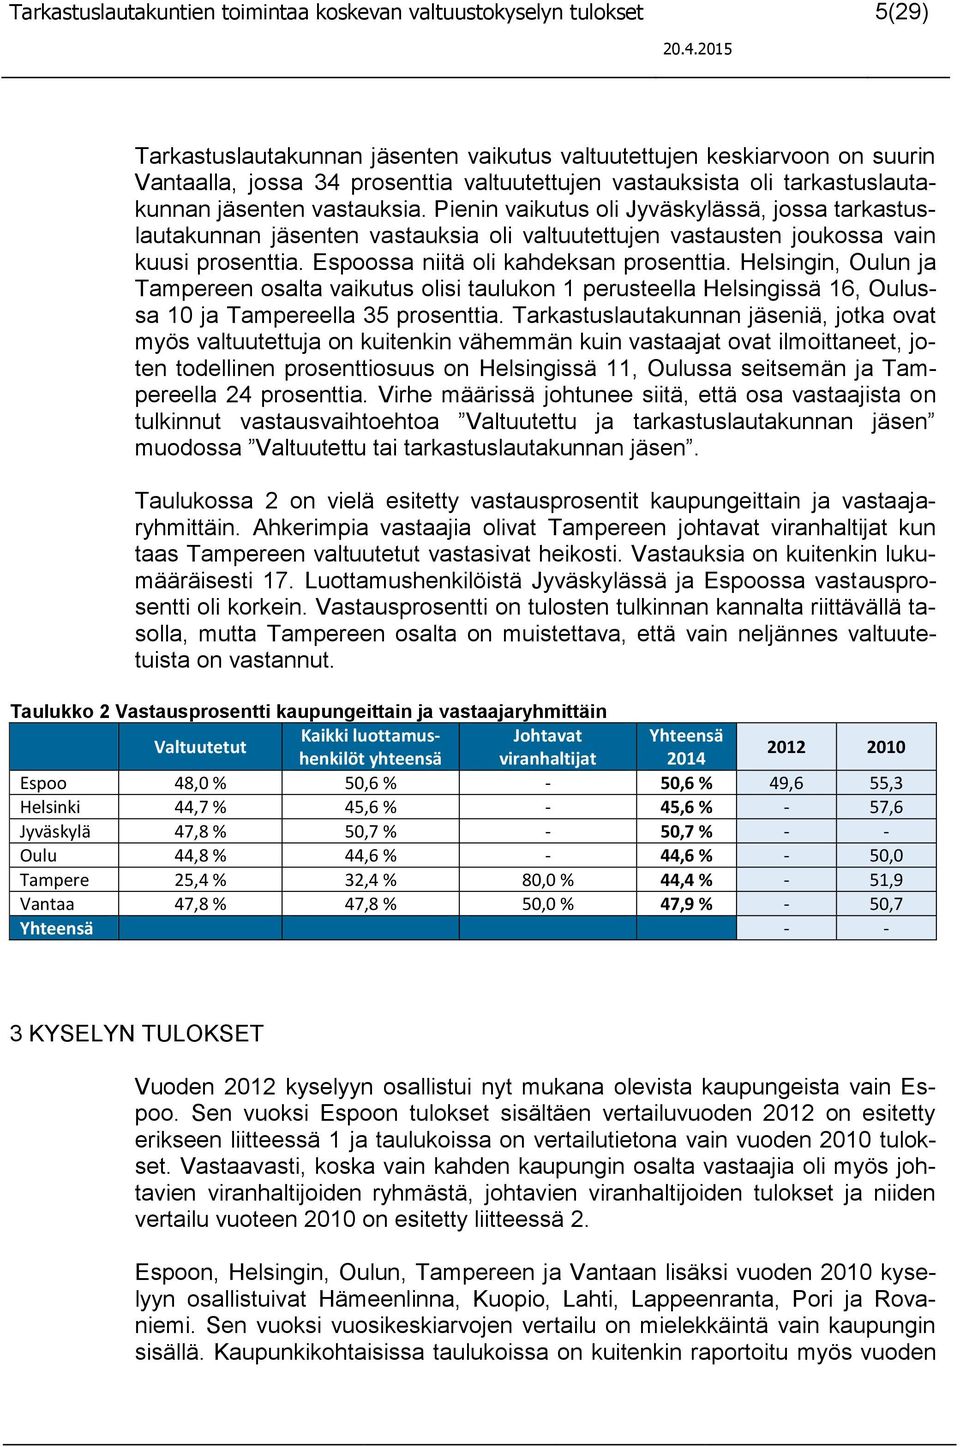 Pienin vaikutus oli Jyväskylässä, jossa tarkastuslautakunnan jäsenten vastauksia oli valtuutettujen vastausten joukossa vain kuusi prosenttia. Espoossa niitä oli kahdeksan prosenttia.